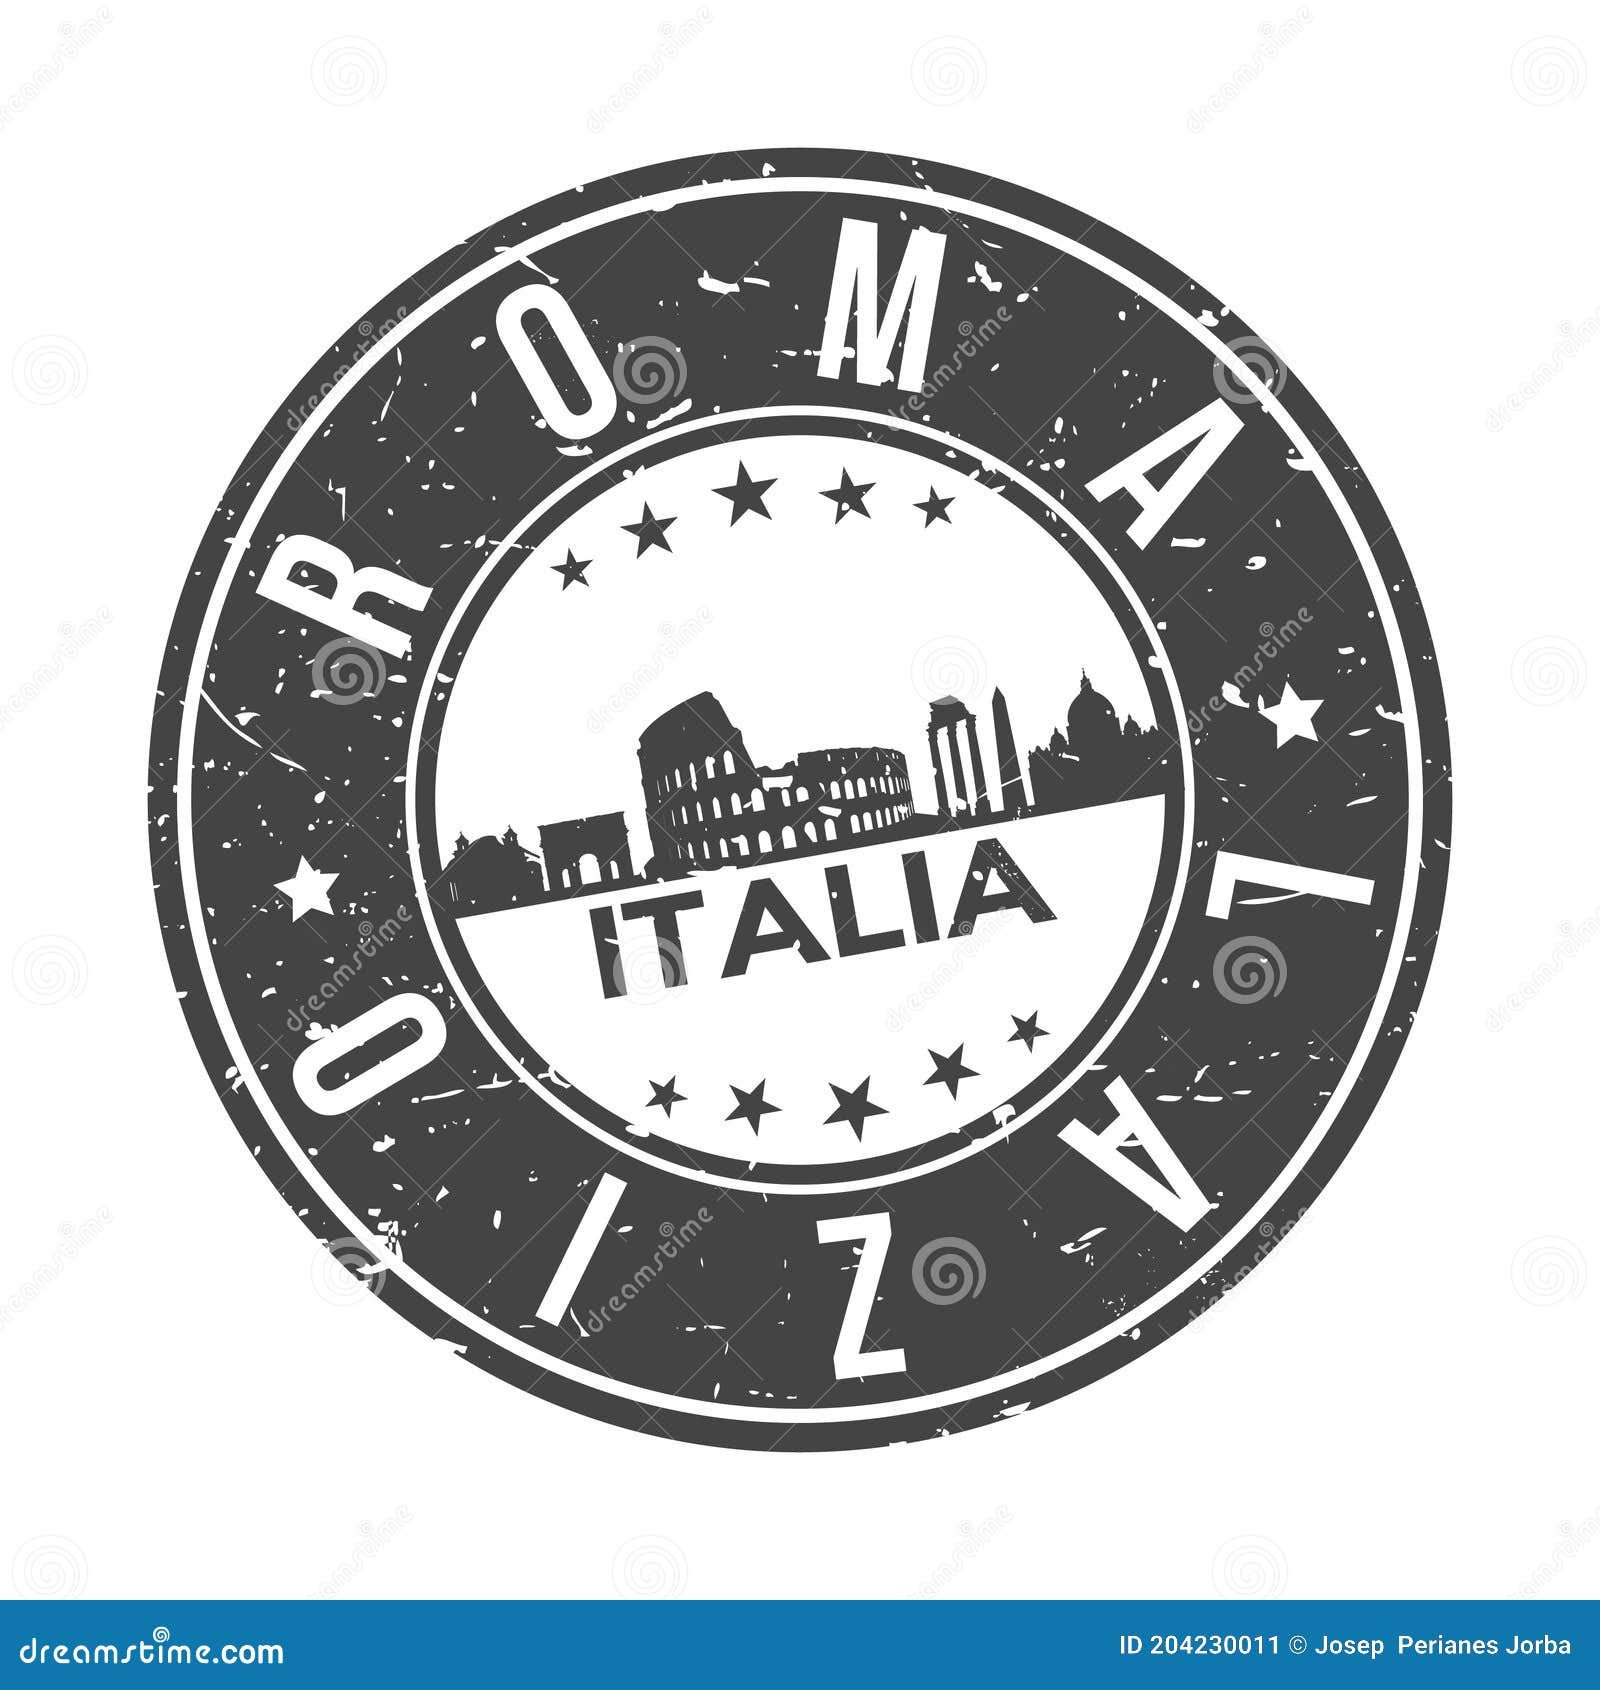 roma italia europa stamp. logo icon   skyline city .